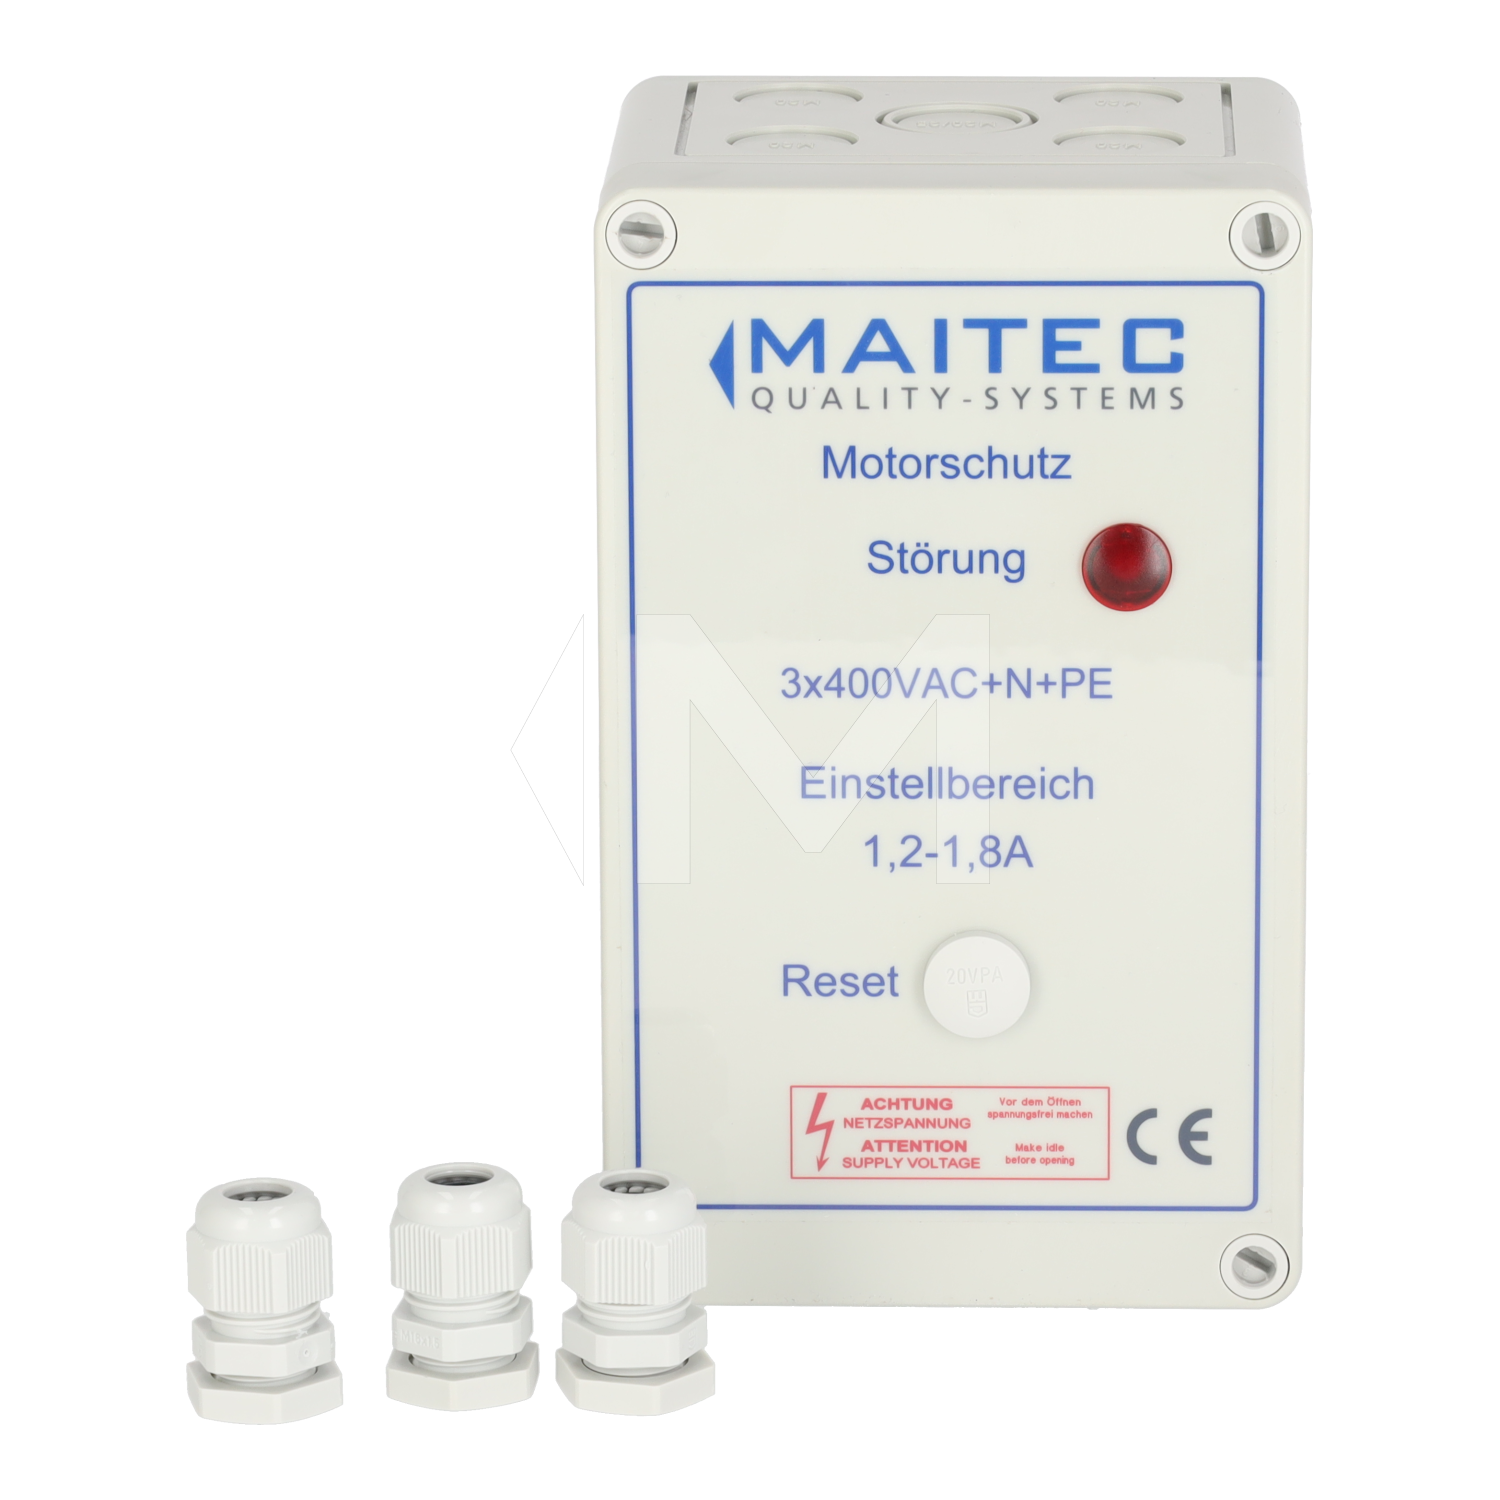 MAITEC Motorschutz